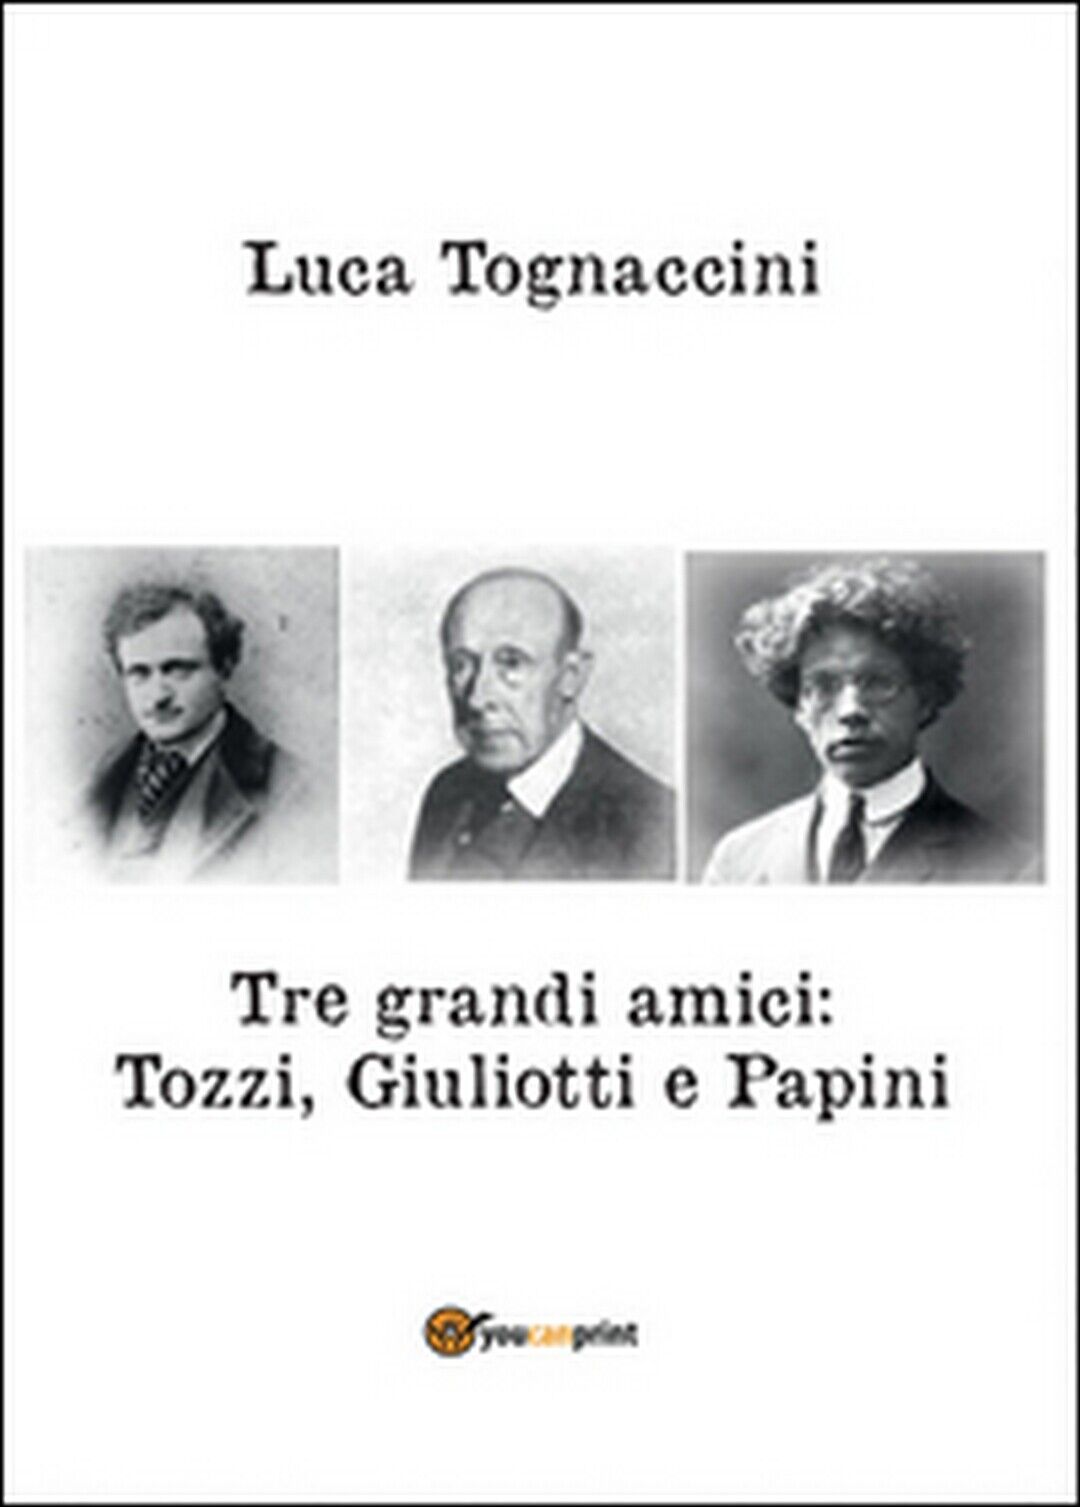 Tre grandi amici: Tozzi, Giuliotti e Papini, Luca Tognaccini,  2016,  Youcanprin